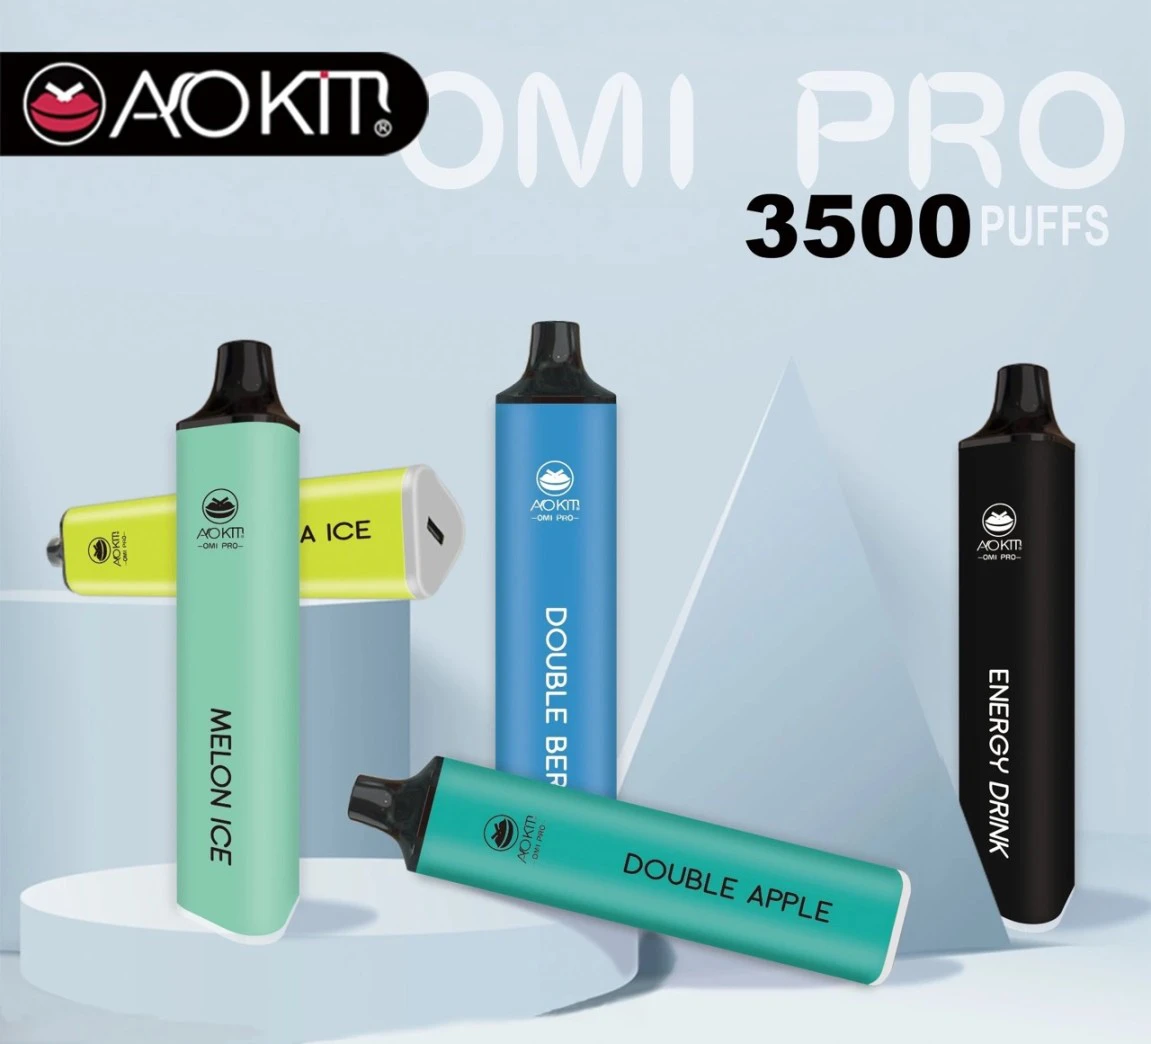 AOKIT Omi Pro 3500 hơi các vị